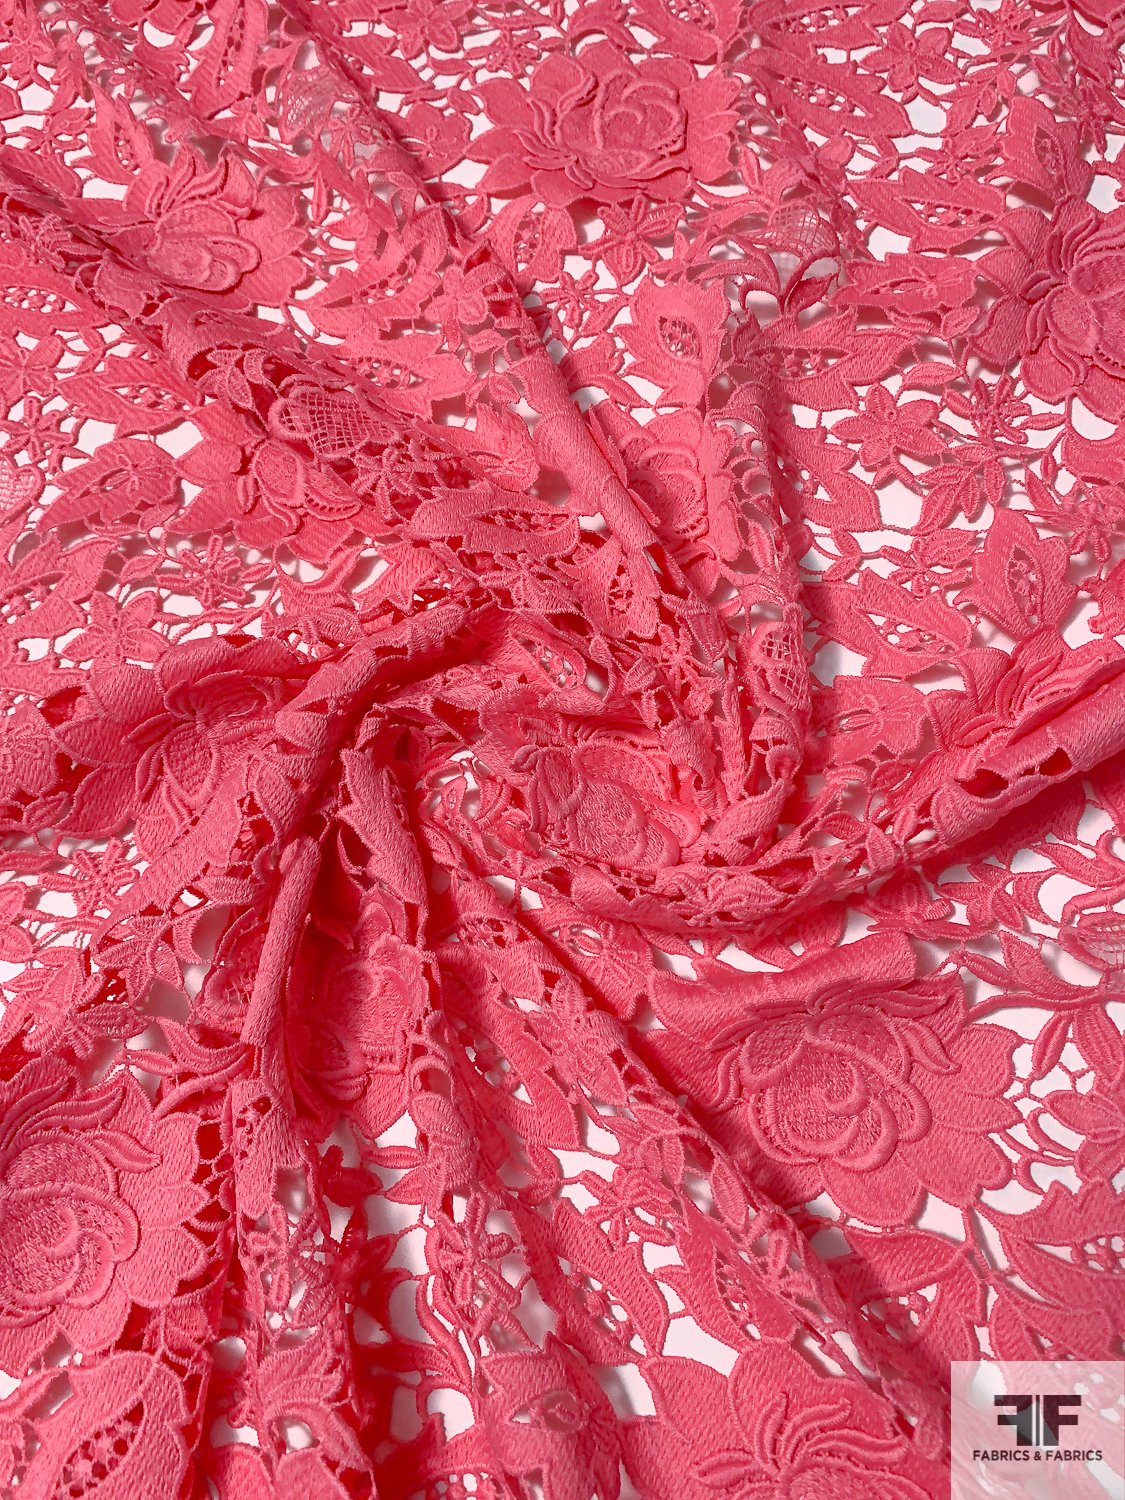 Lela Rose 3D Floral Guipure Lace - Coral-Crimson Pink | FABRICS ...